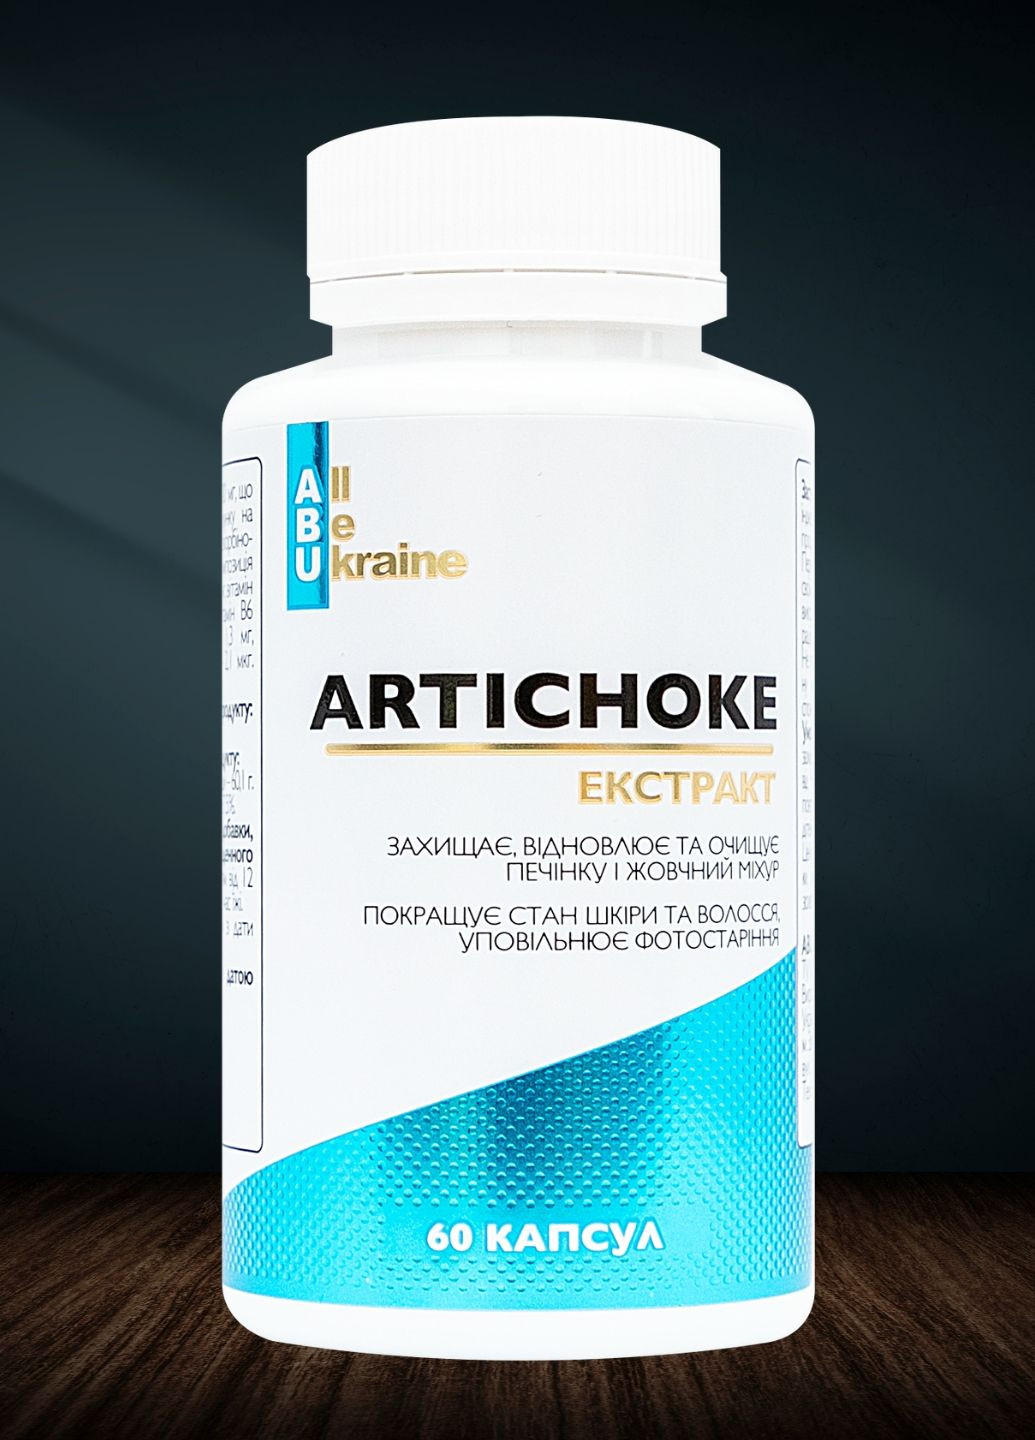 Комплекс для печінки з артишоком Artichoke Extract+ 60 капсул | Очищення печінки та уповільнення фотостаріння ABU (All Be Ukraine) (279830465)